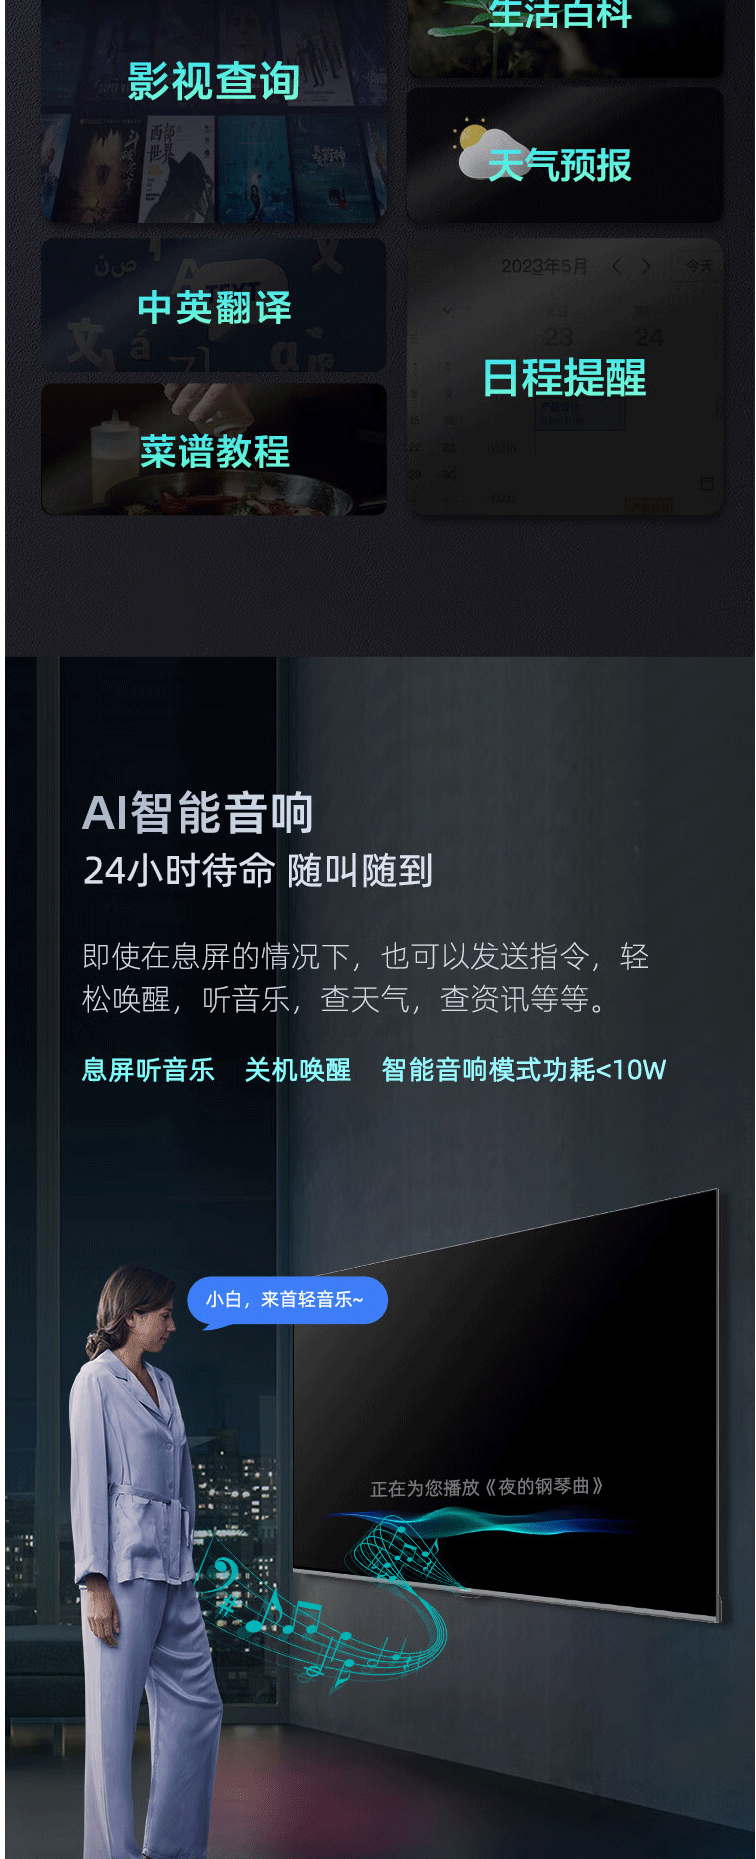 长虹/CHANGHONG 65D59H 65英寸4K超高清 平板LED液晶电视机